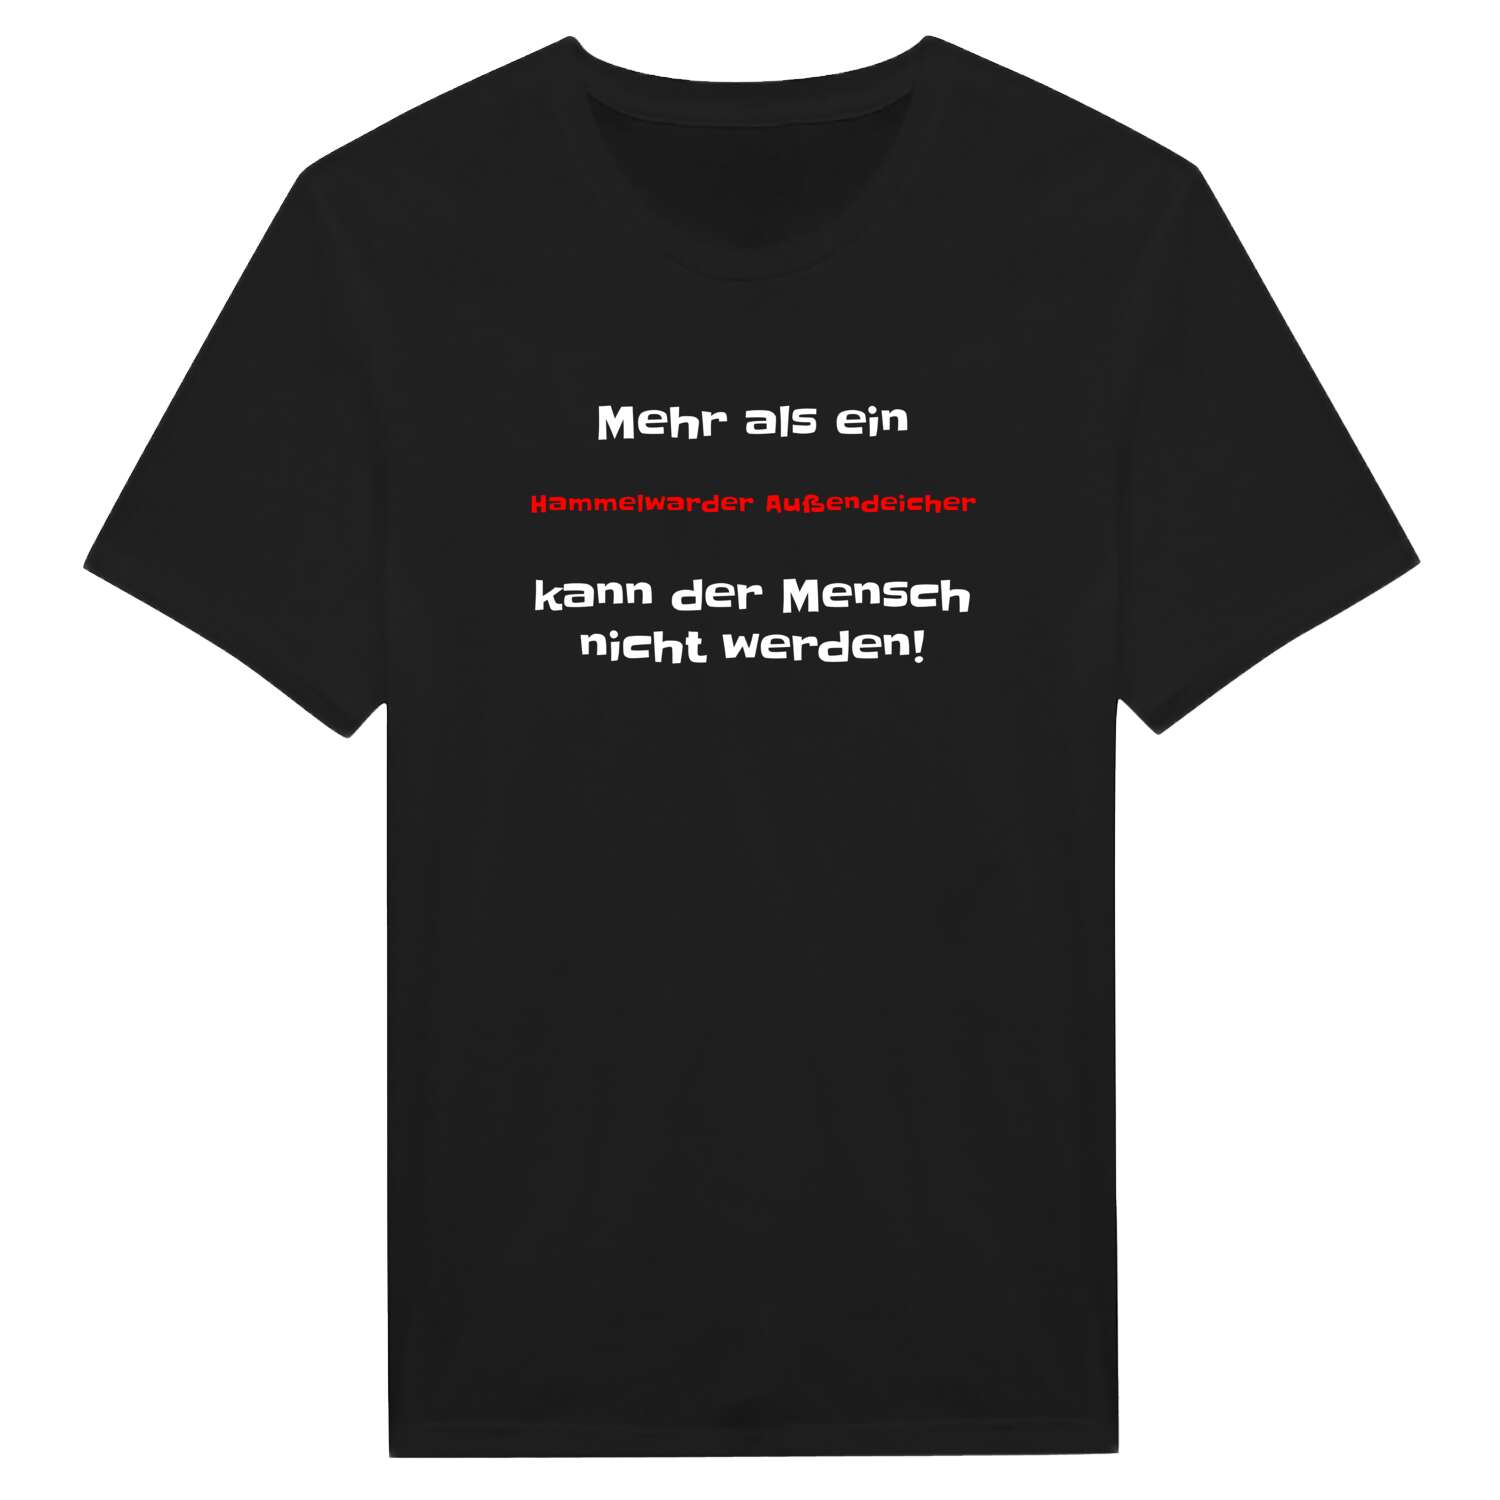 Hammelwarder Außendeich T-Shirt »Mehr als ein«